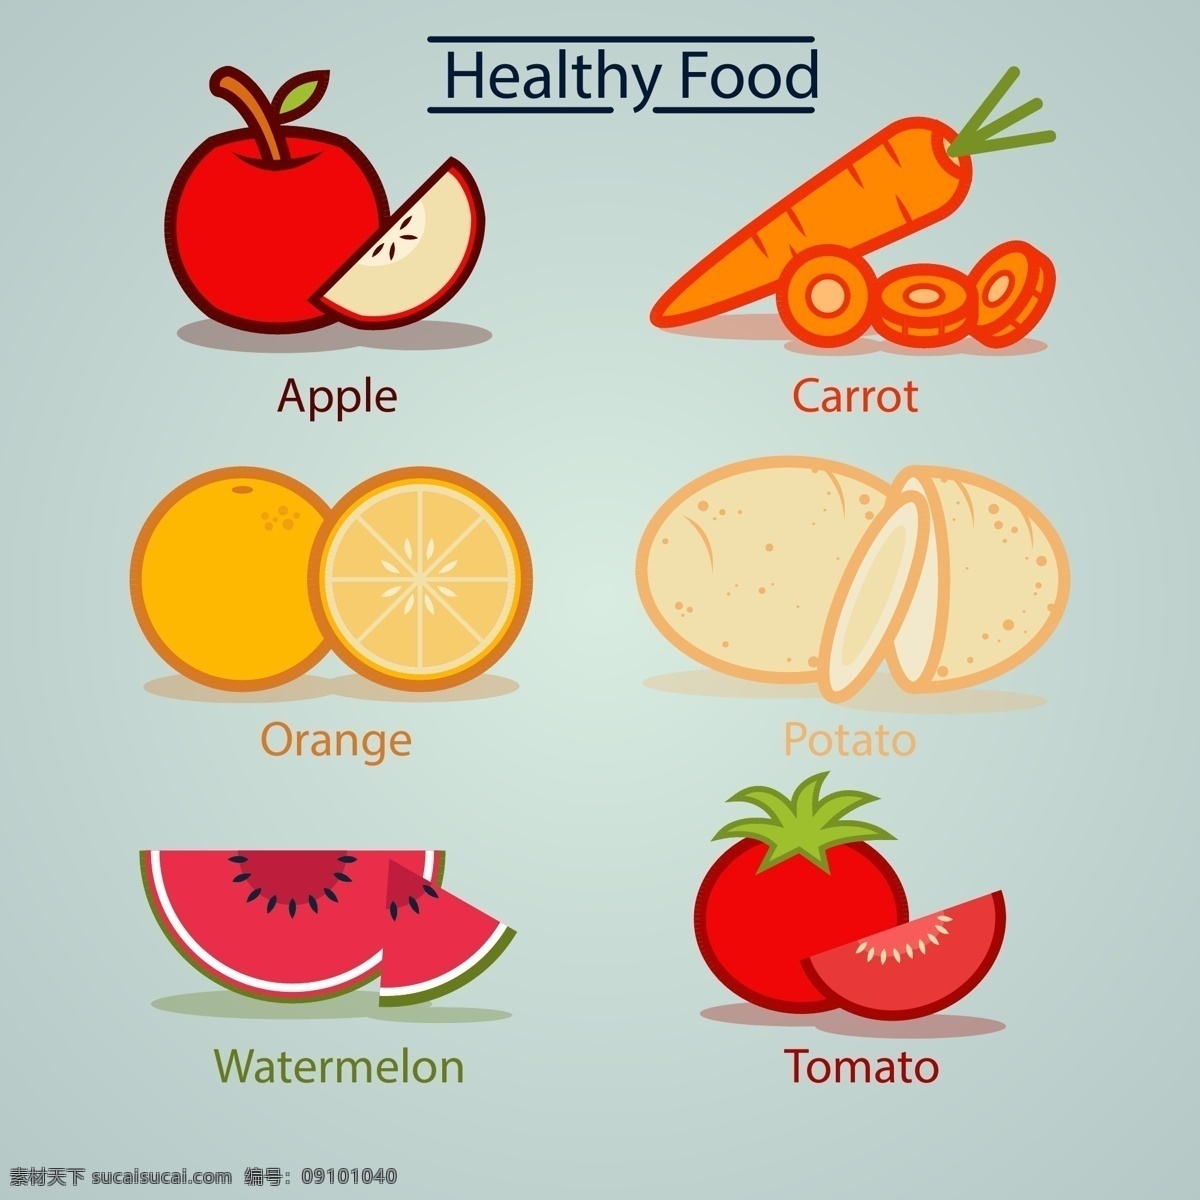 美食 果蔬 图标 橙 胡萝卜 马铃薯 美食图标 美味 苹果 食品 蔬菜 水果 水果图标 西瓜 西红柿 矢量图 日常生活